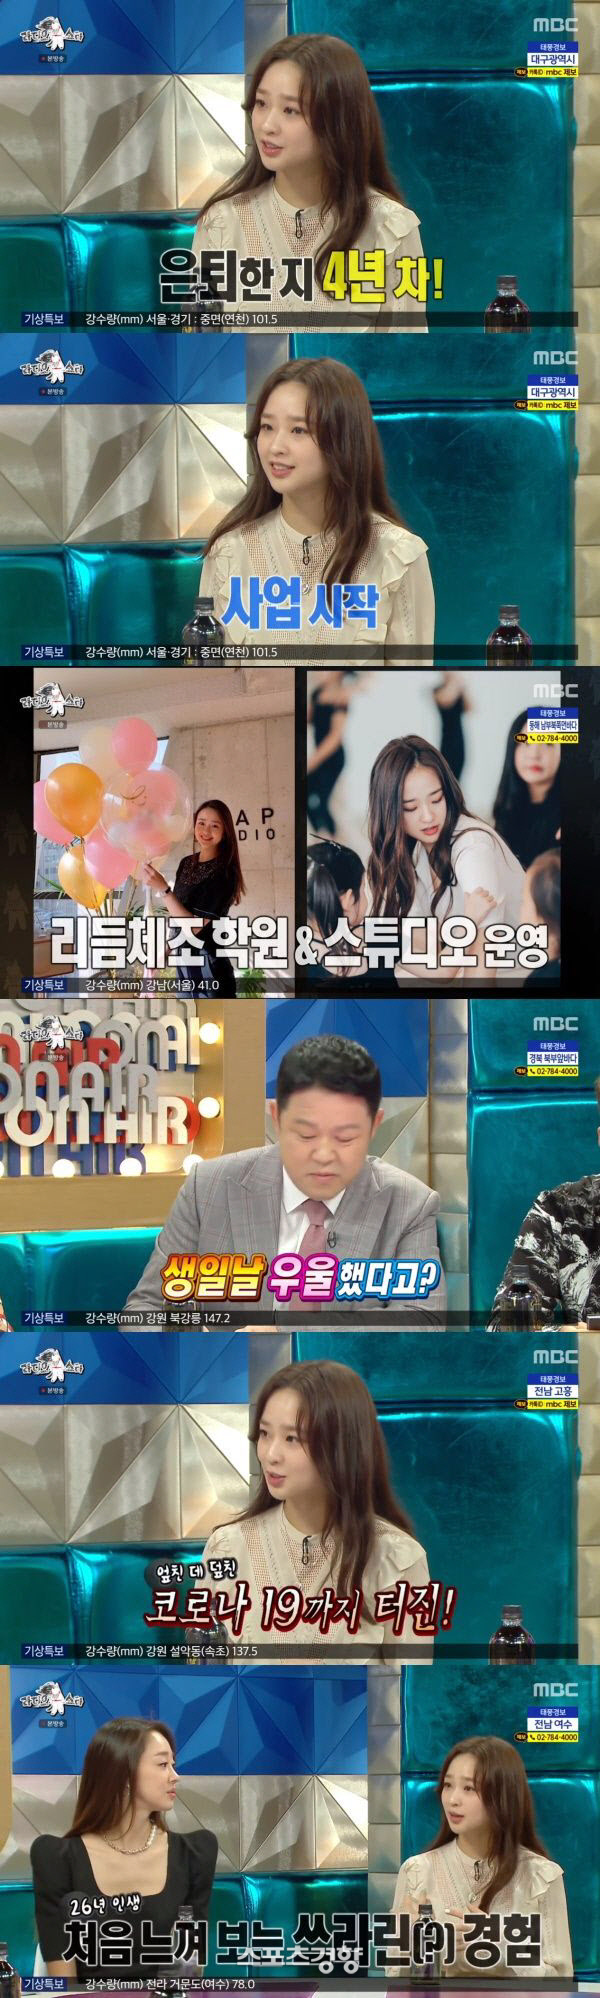 MBC ‘라디오 스타’에 출연한 손연재. 방송화면 캡처